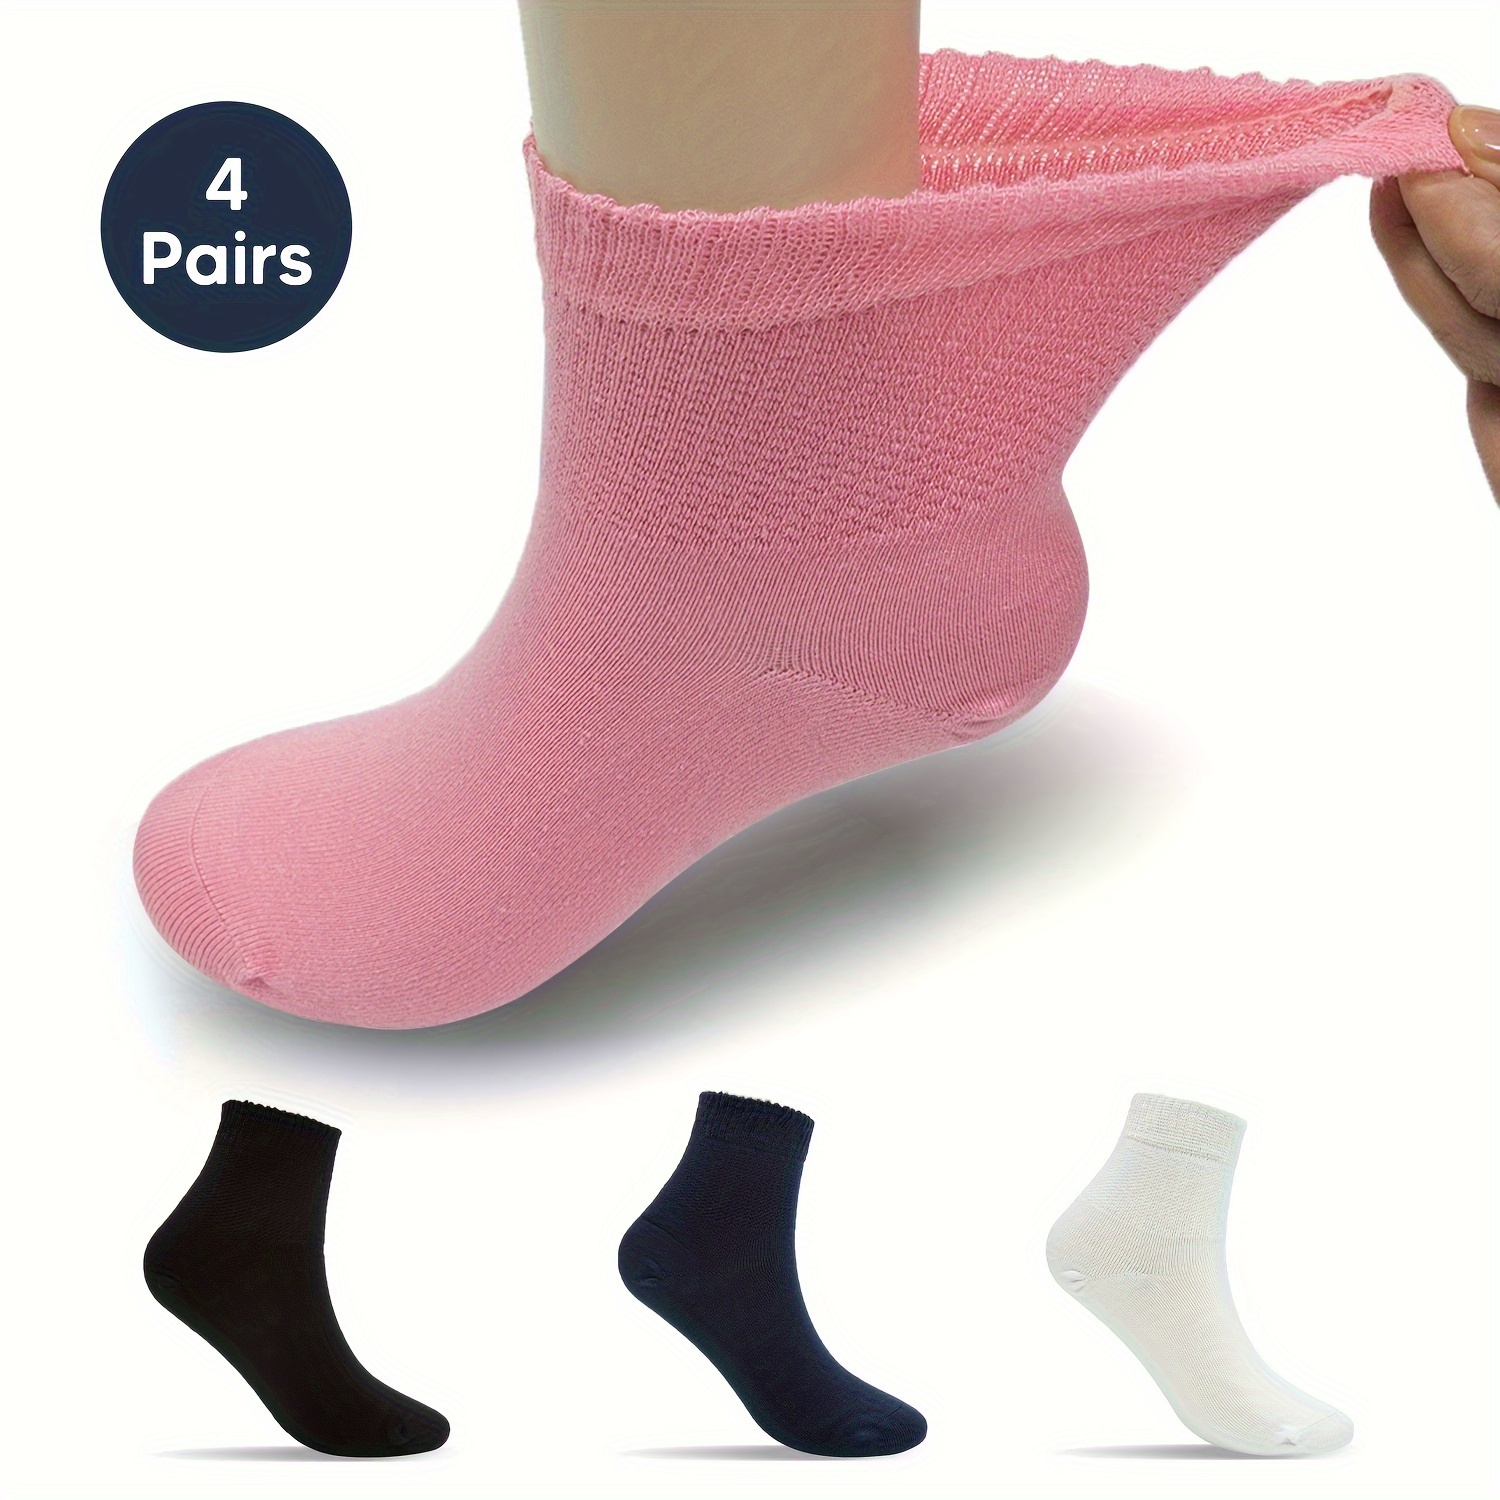 Pack de 3 pares de calcetines sin costuras para niño azul marino